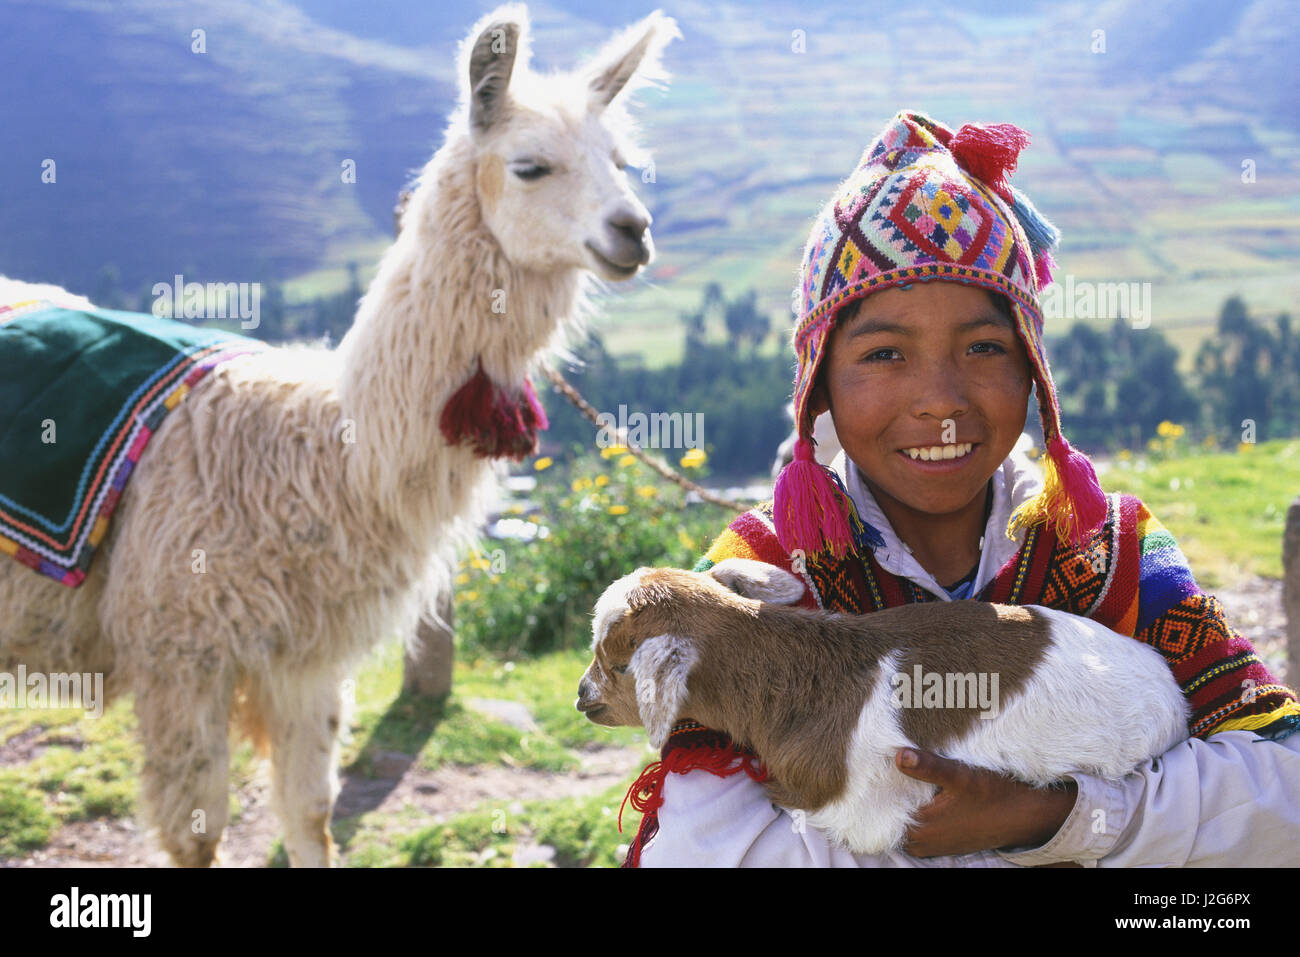 Boy with baby Llama, near Cuzco, Peru Stock Photo